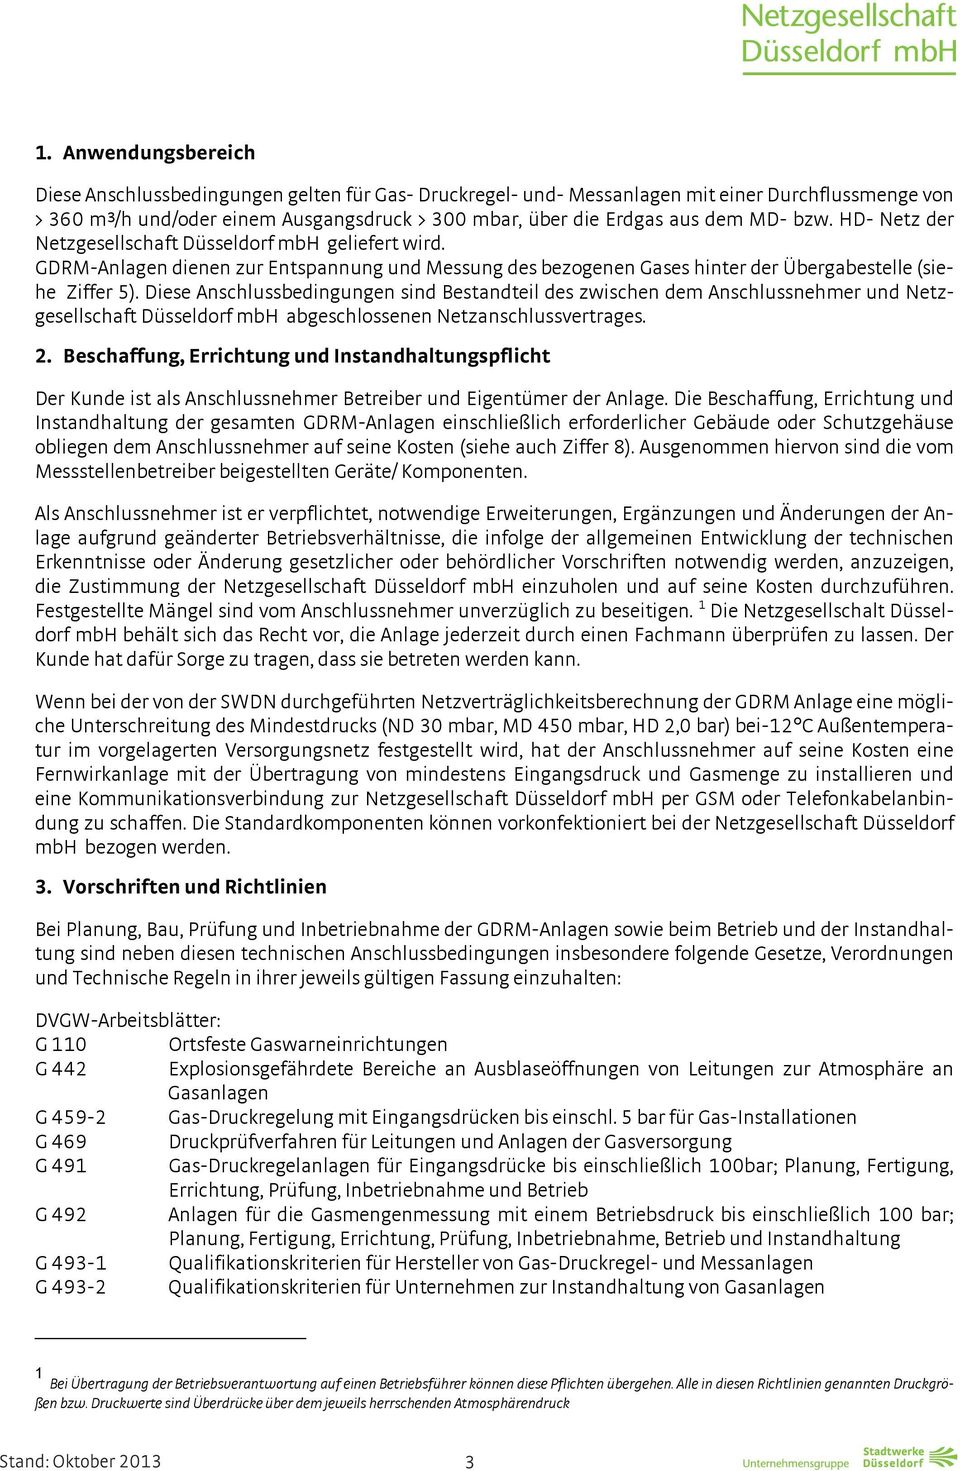 Diese Anschlussbedingungen sind Bestandteil des zwischen dem Anschlussnehmer und Netzgesellschaft Düsseldorf mbh abgeschlossenen Netzanschlussvertrages. 2.